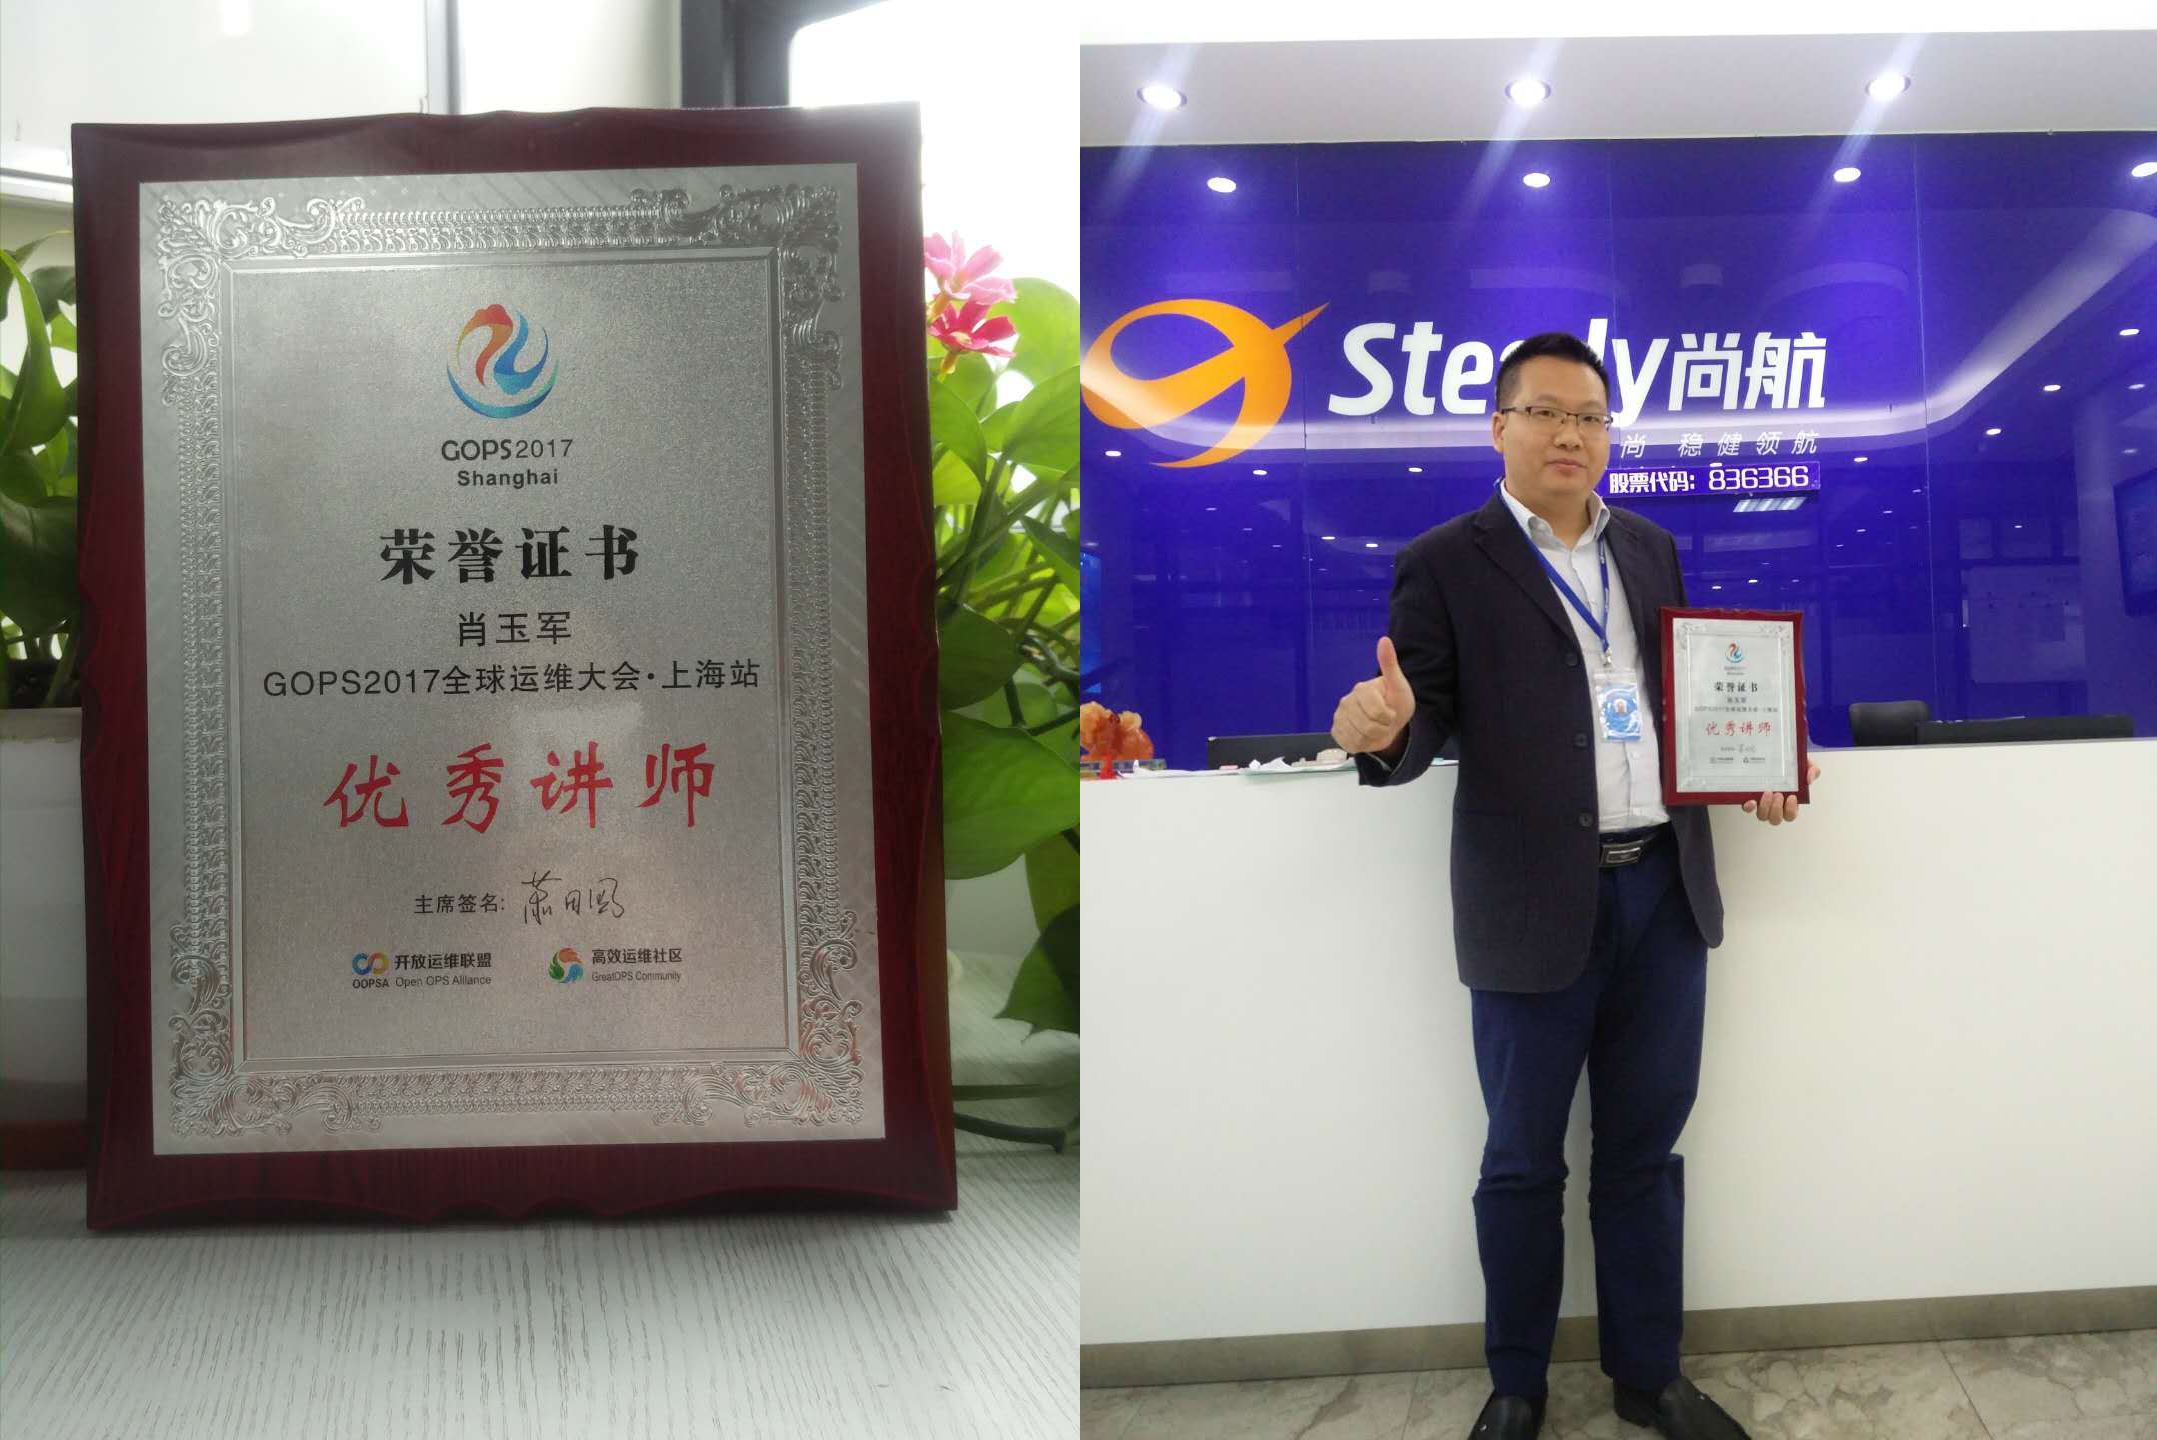 尚航科技 | VPN事业部总经理获评优秀讲师荣誉称号